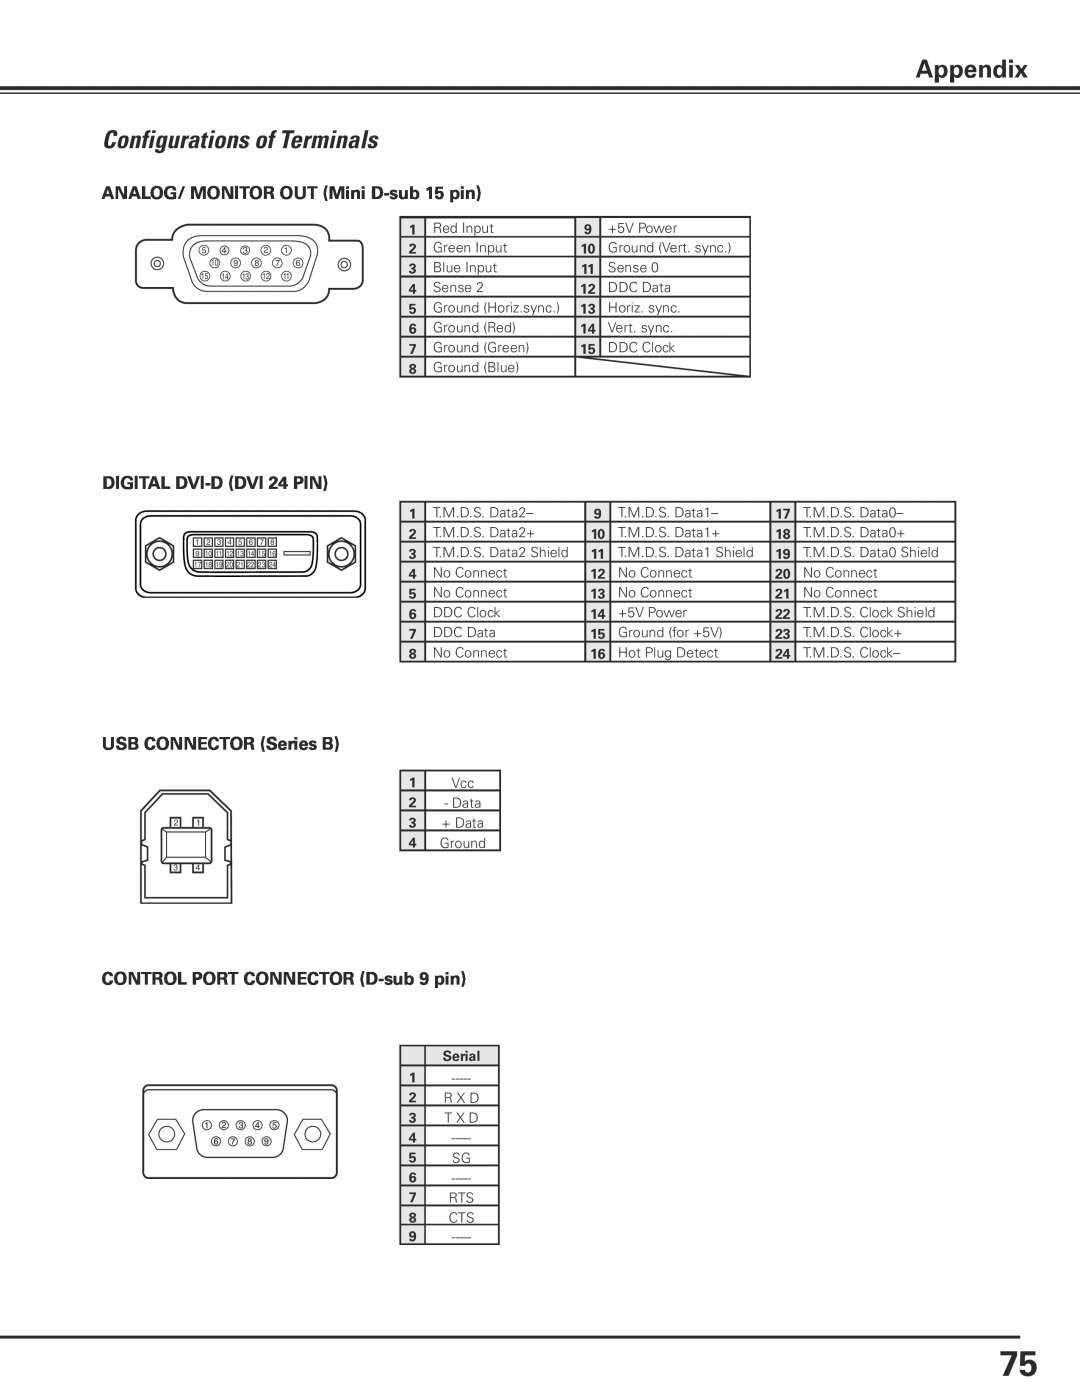 Sanyo PLC-XP100L Configurations of Terminals, Appendix, ANALOG/ MONITOR OUT Mini D-sub 15 pin, DIGITAL DVI-D DVI 24 PIN 